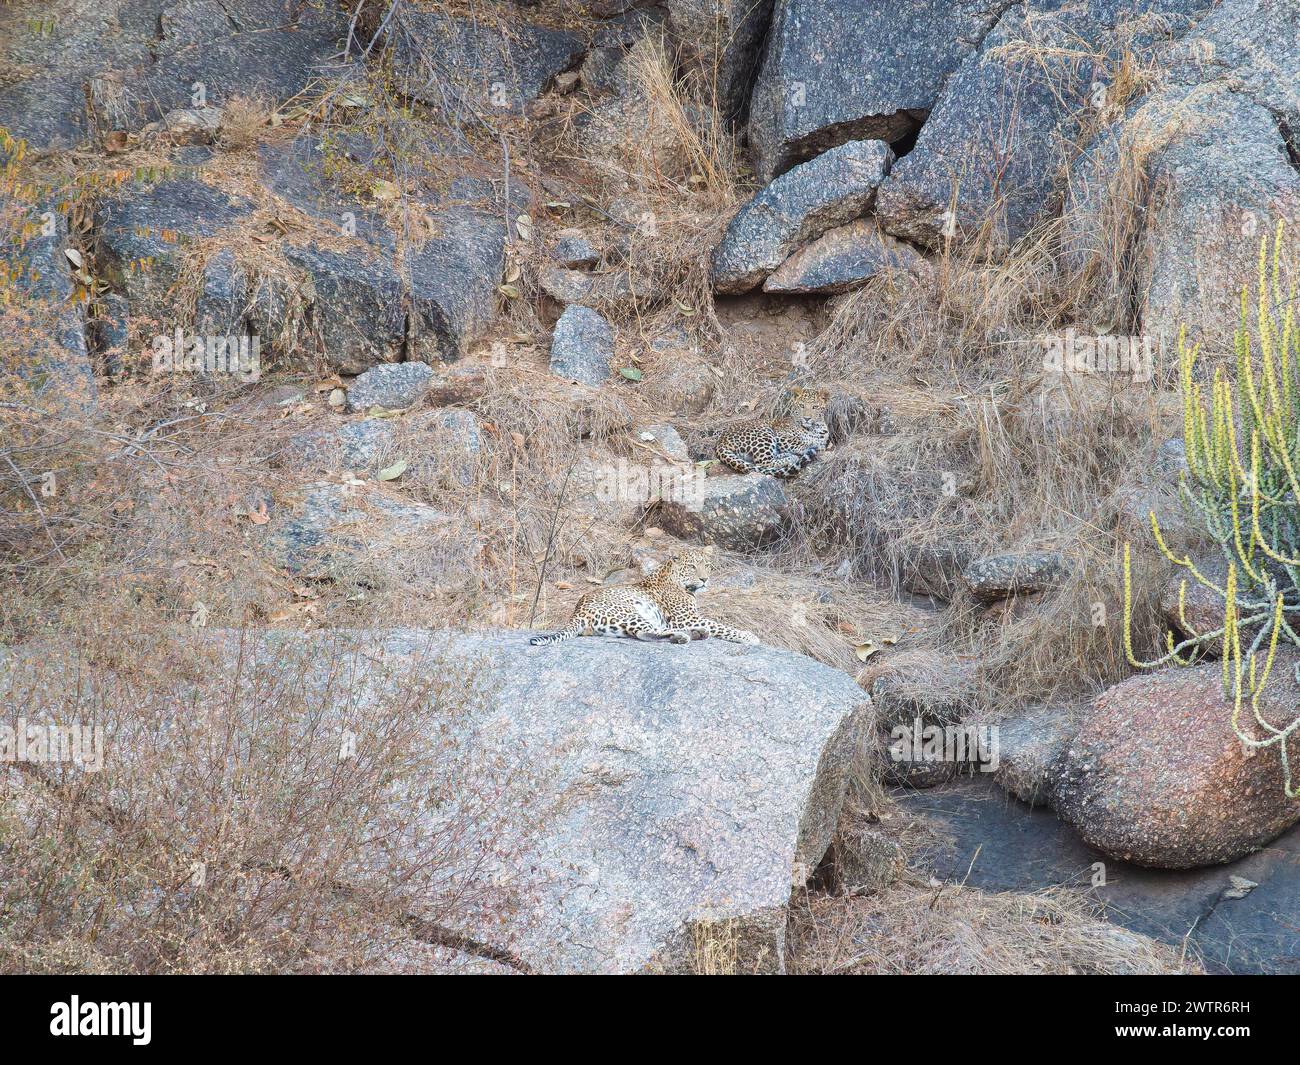 Leopardenmütter entspannen sich. INDIEN KANN MAN die schwer fassbaren Leoparden beobachten, die von einem britischen Fotografen in den Hügeln um Rajastha versteckt sind Stockfoto